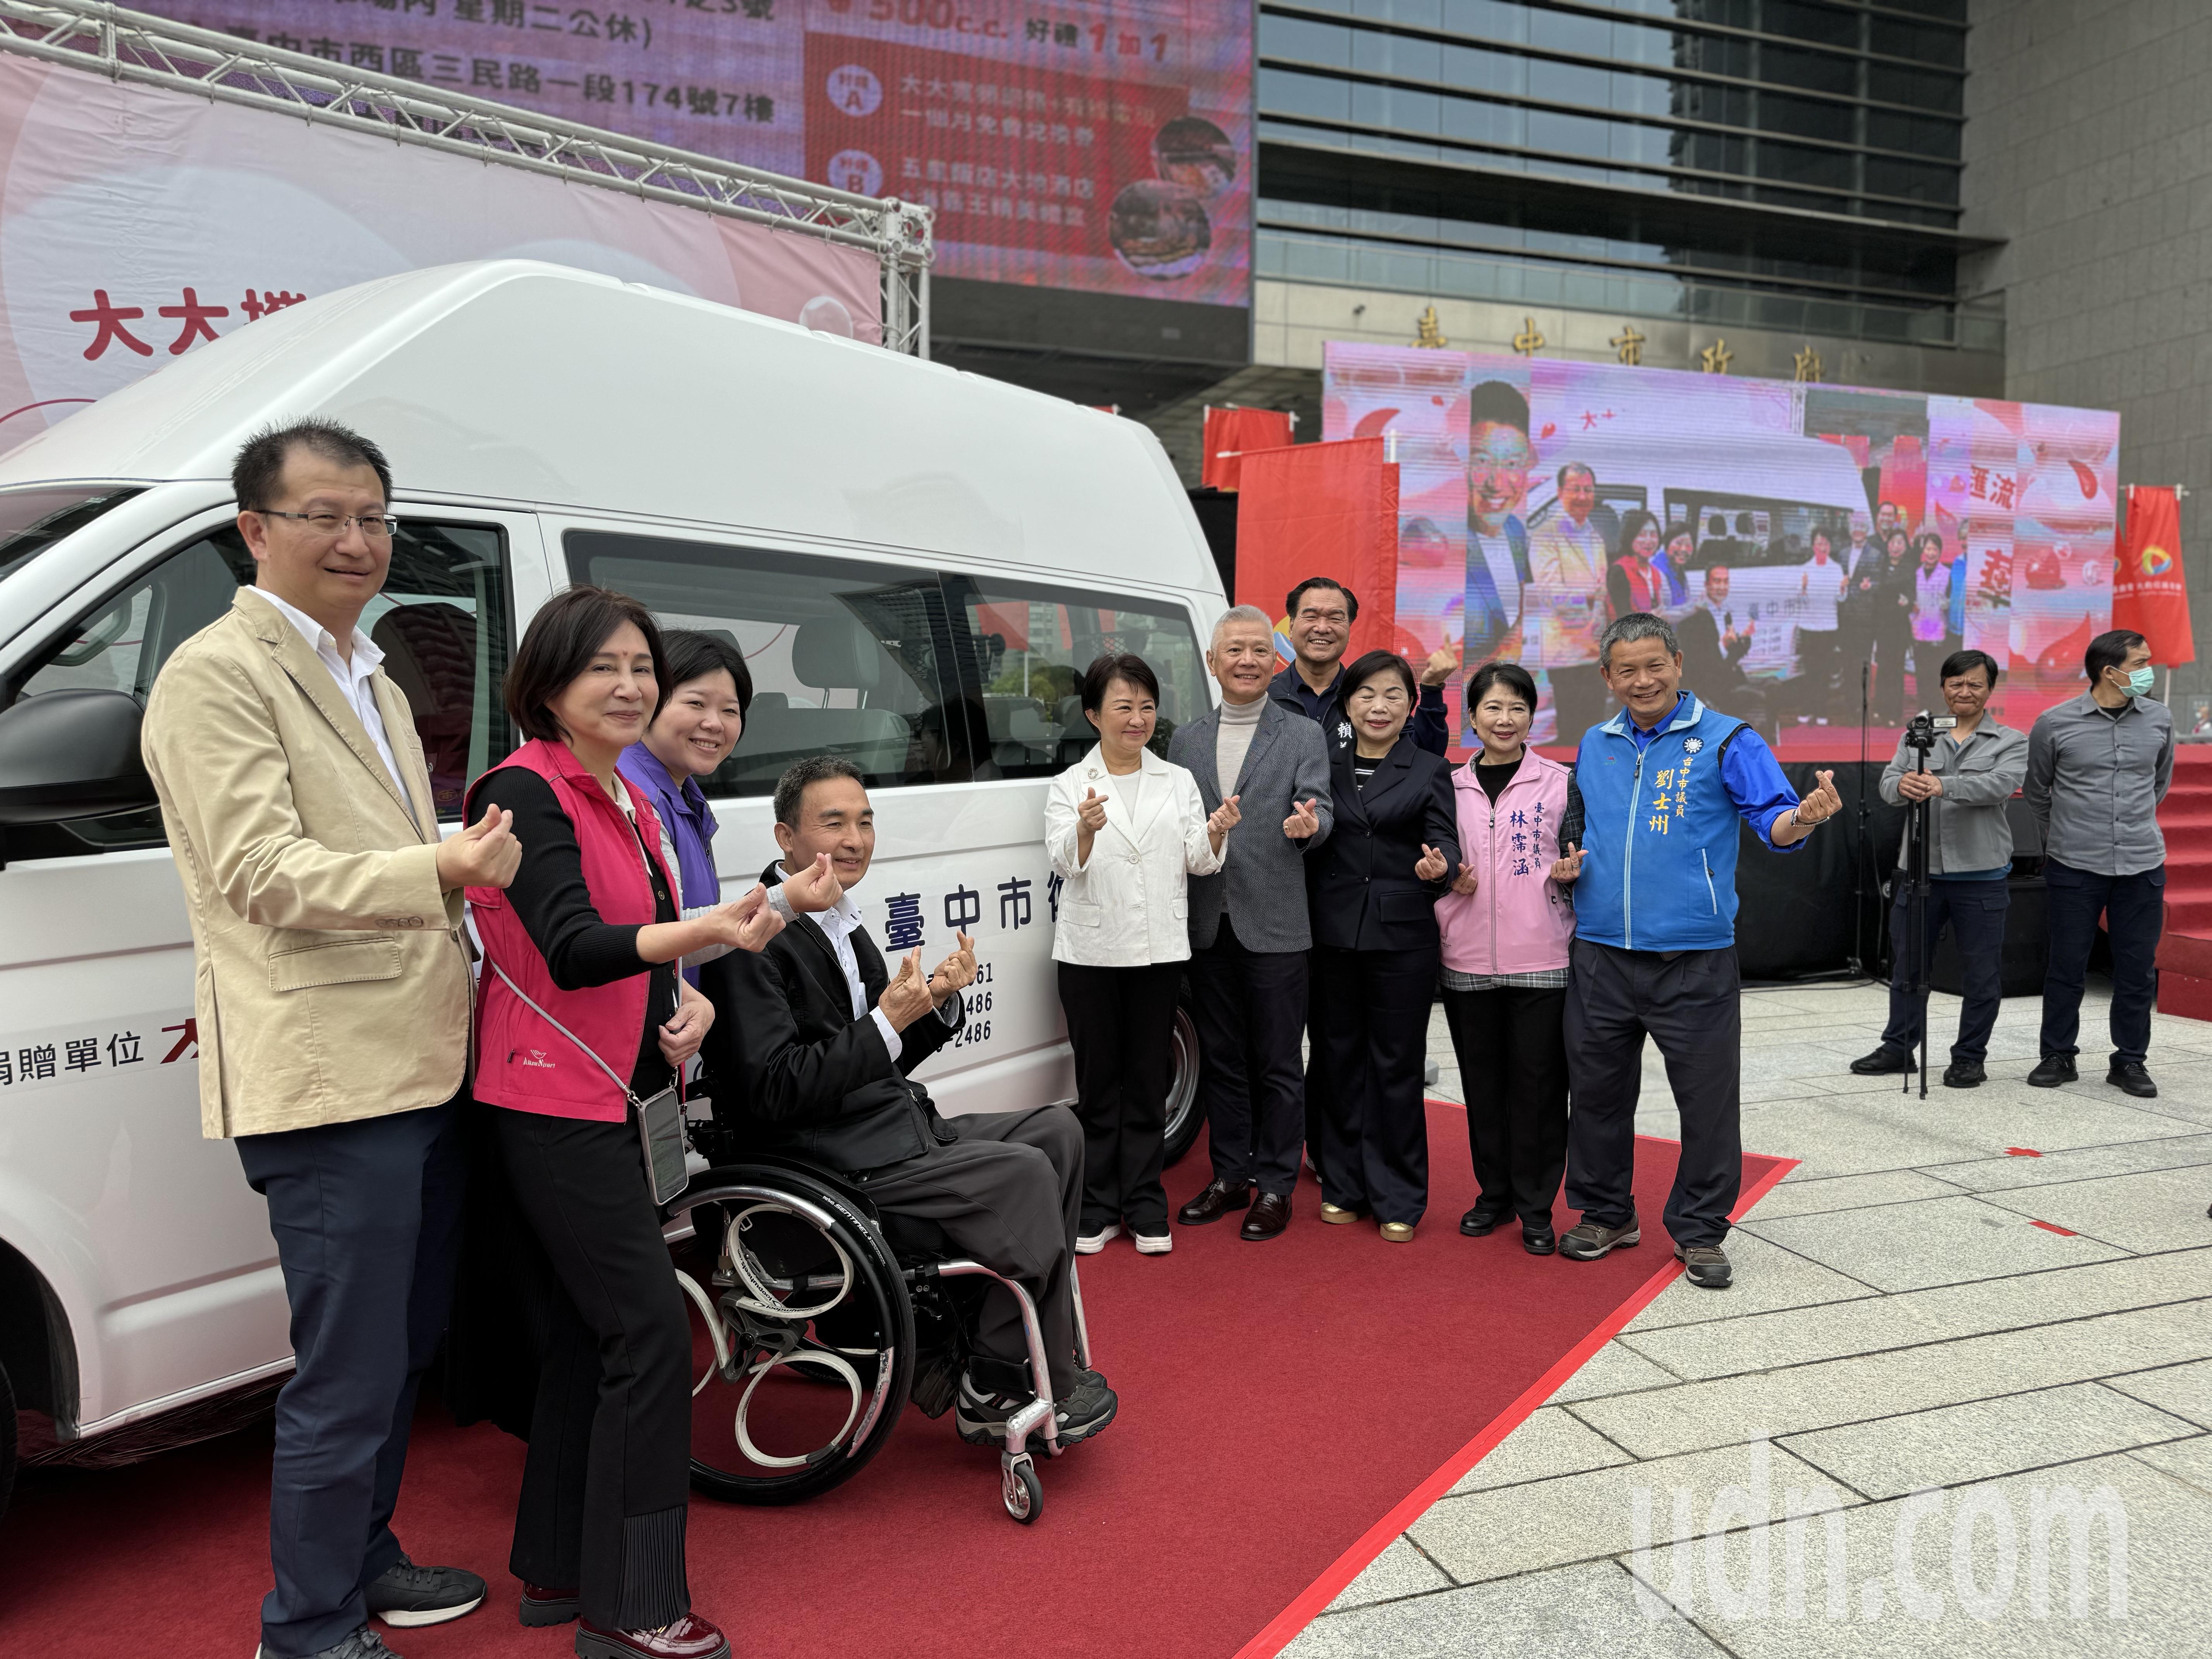 民间企业捐赠台中市政府1辆高顶复康巴士，提供身障者复康就医服务。记者刘柏均／摄影